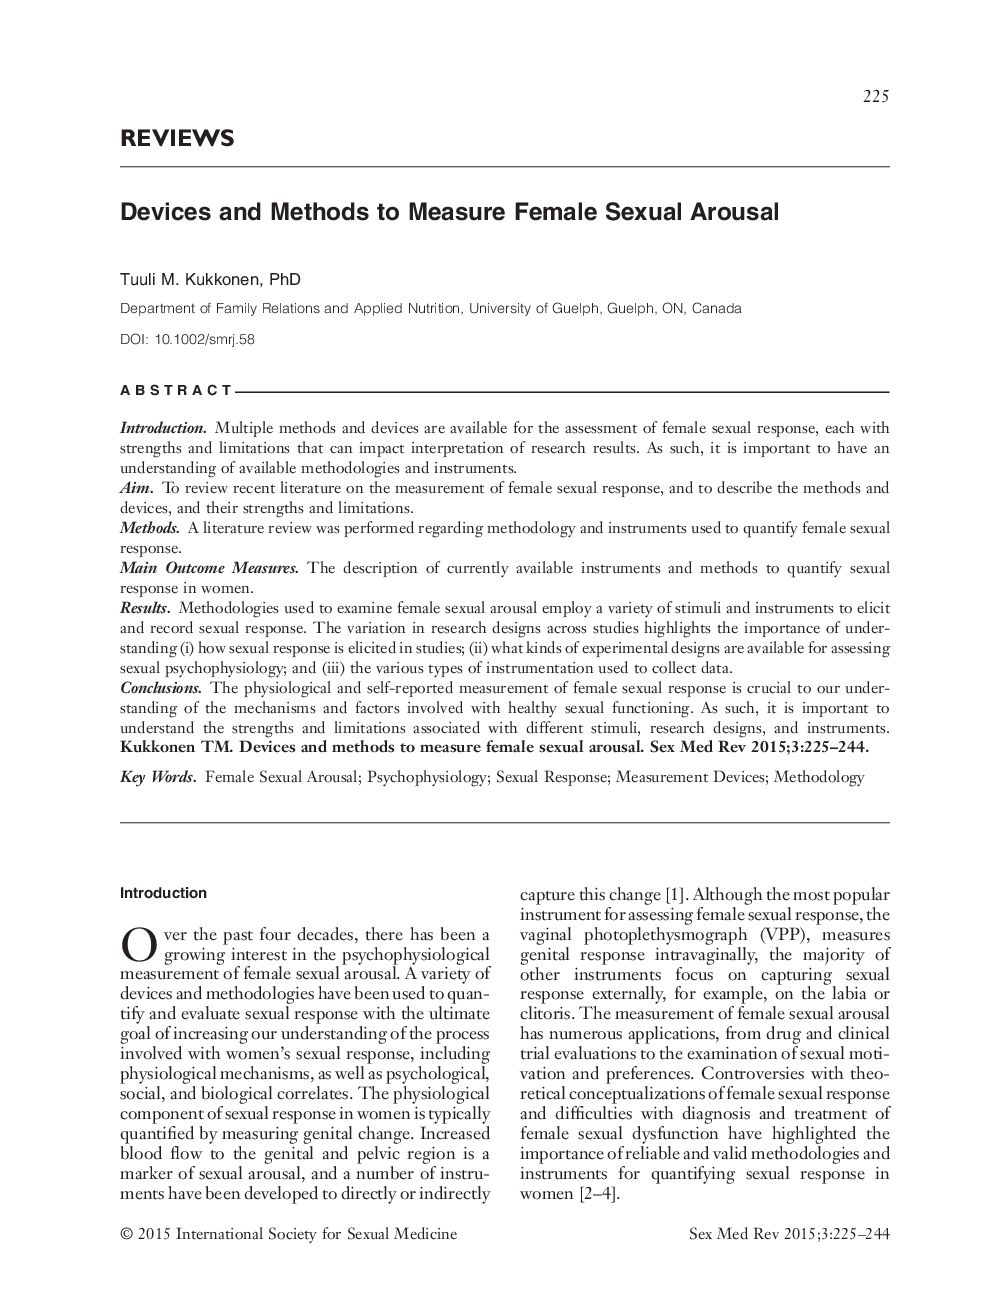 دستگاه ها و روش های اندازه گیری تحریک جنسی زنانه 